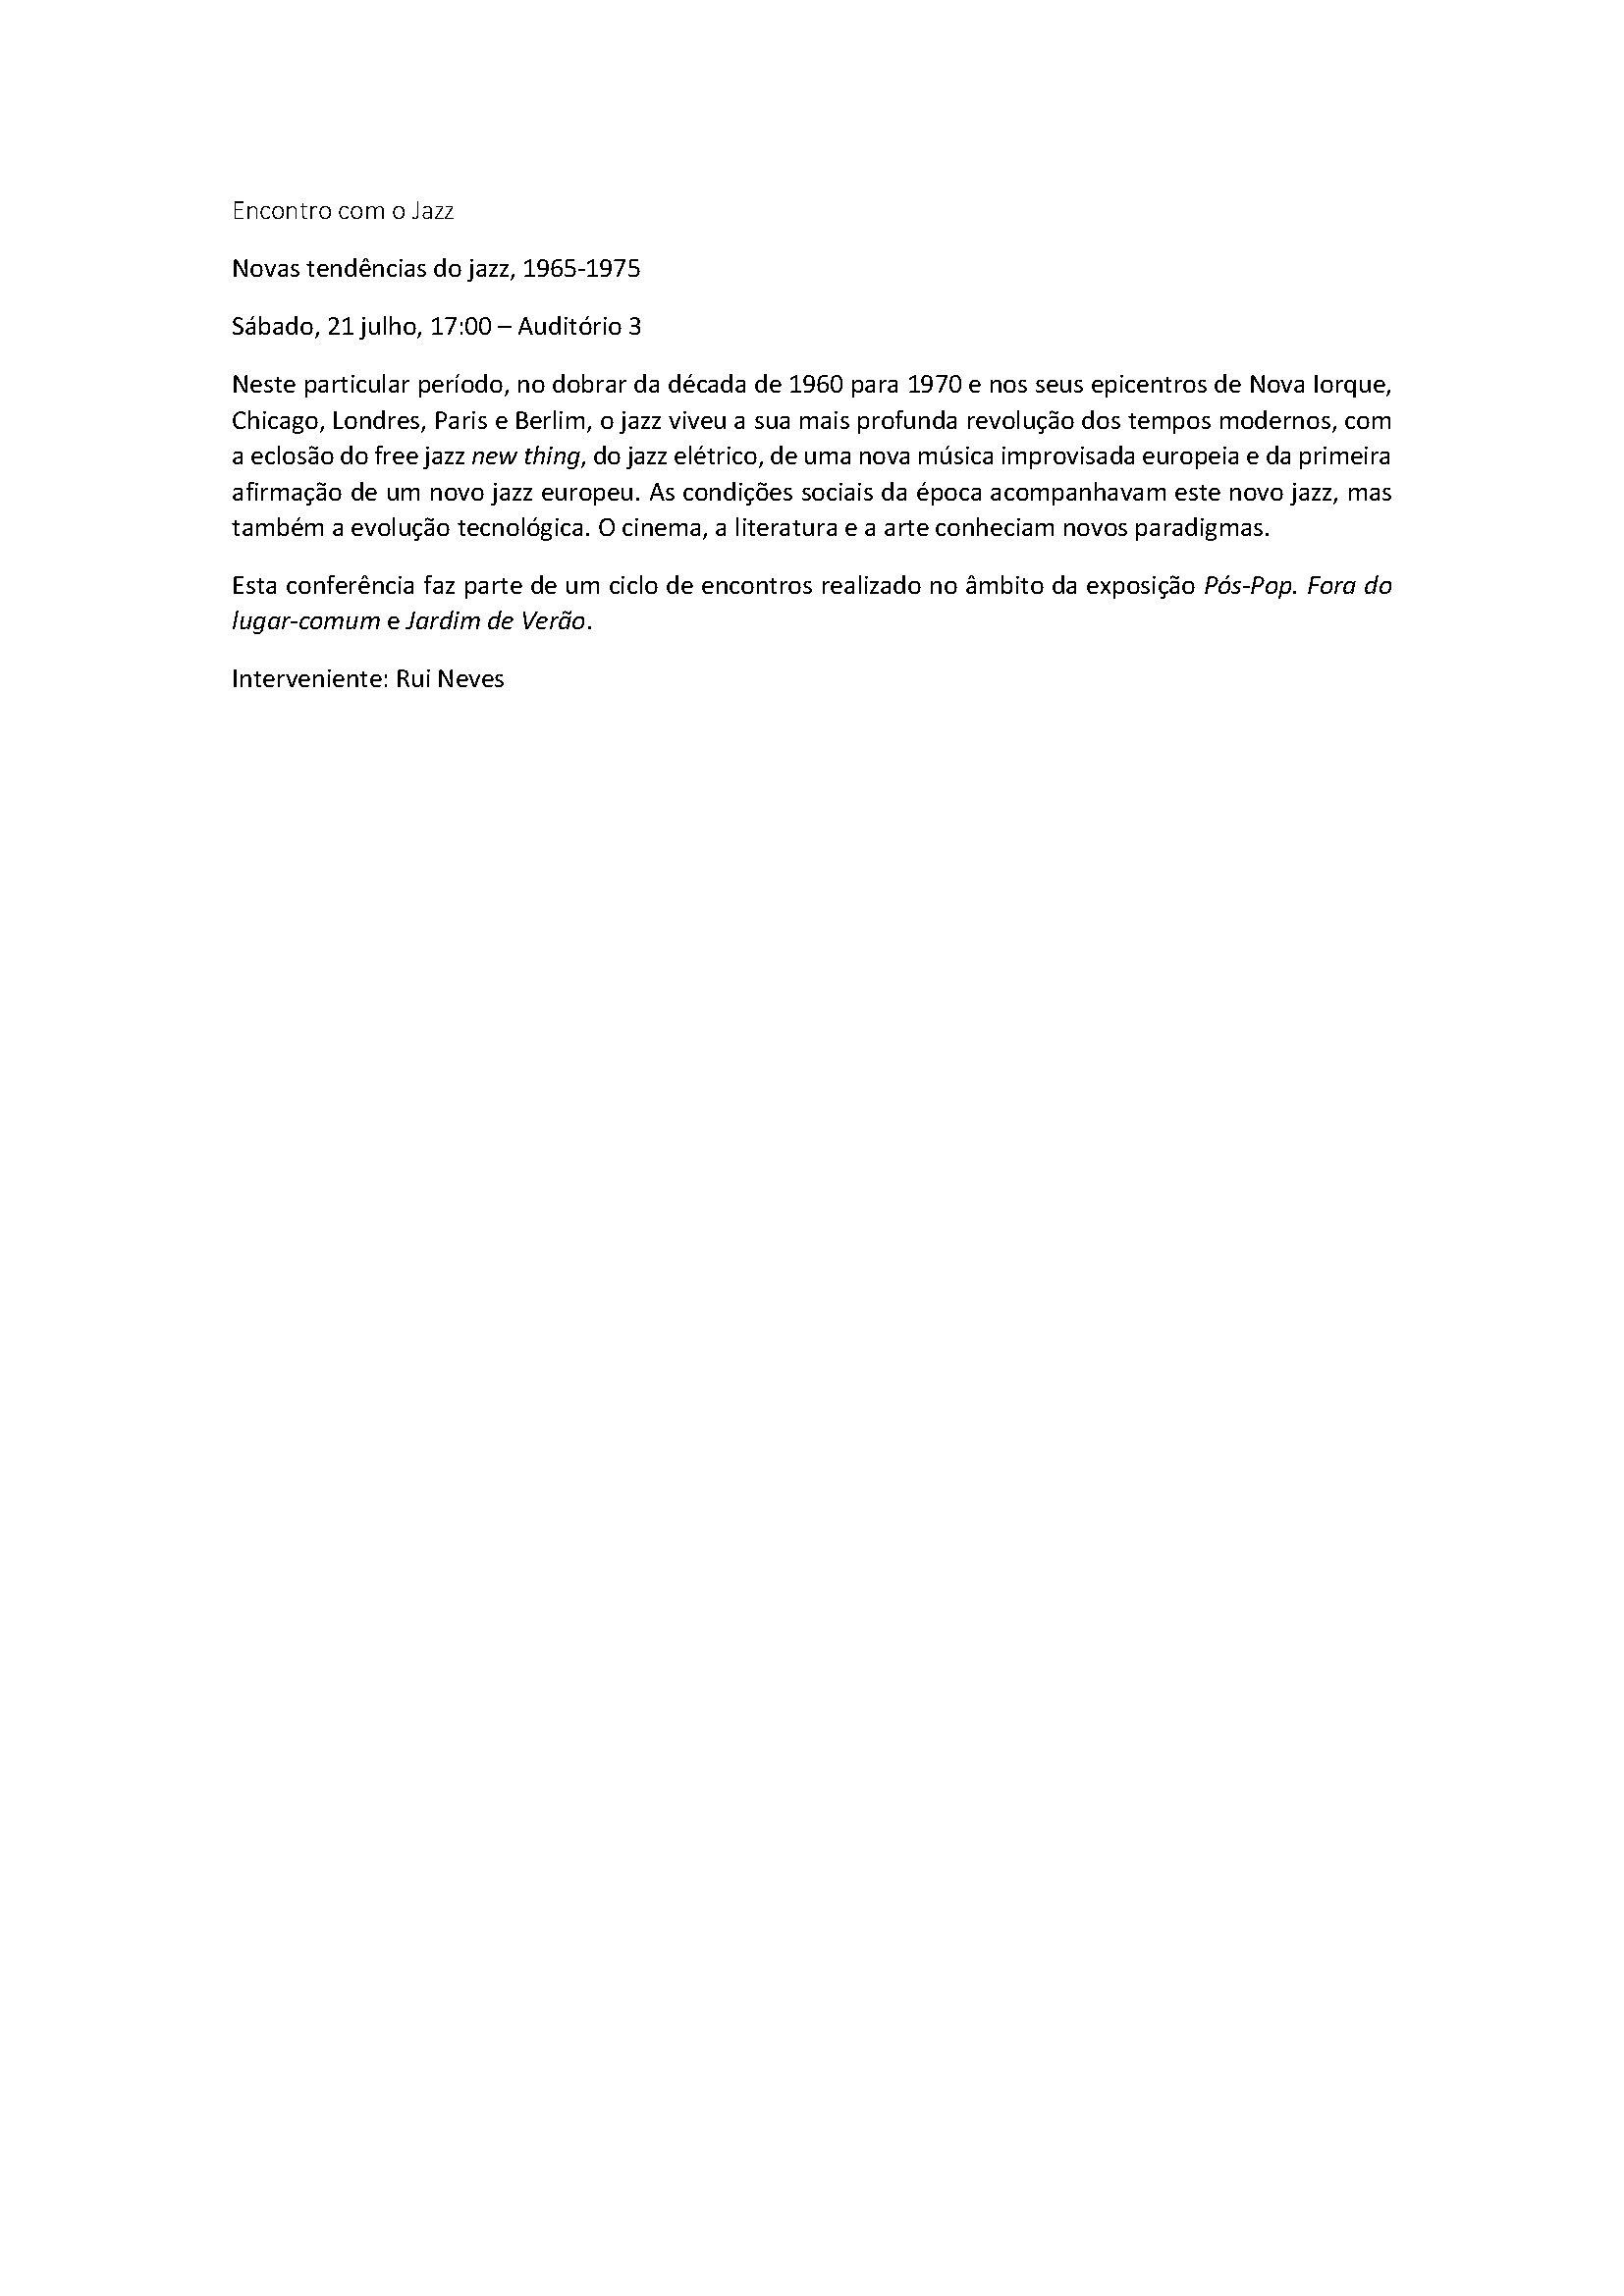 Museu Calouste Gulbenkian – Coleção Moderna / Fundação Calouste Gulbenkian